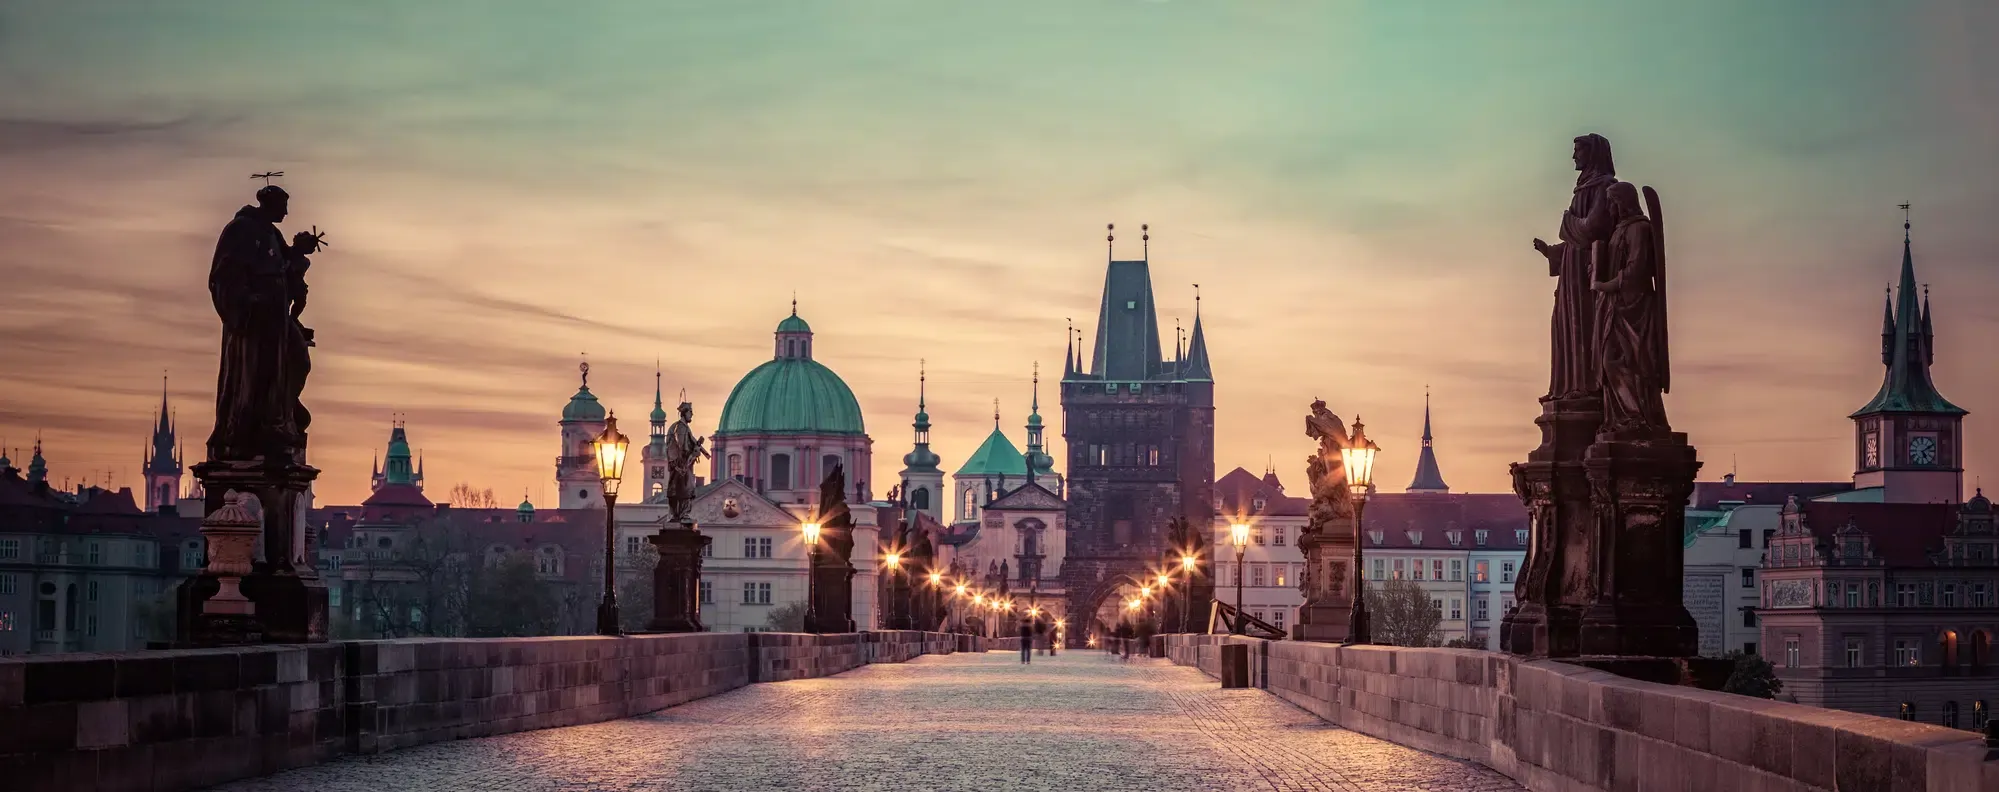 ¿Dónde alojarse en Praga? Los 5 mejores lugares para alojarse (+ zonas a evitar) 🇨🇿 1